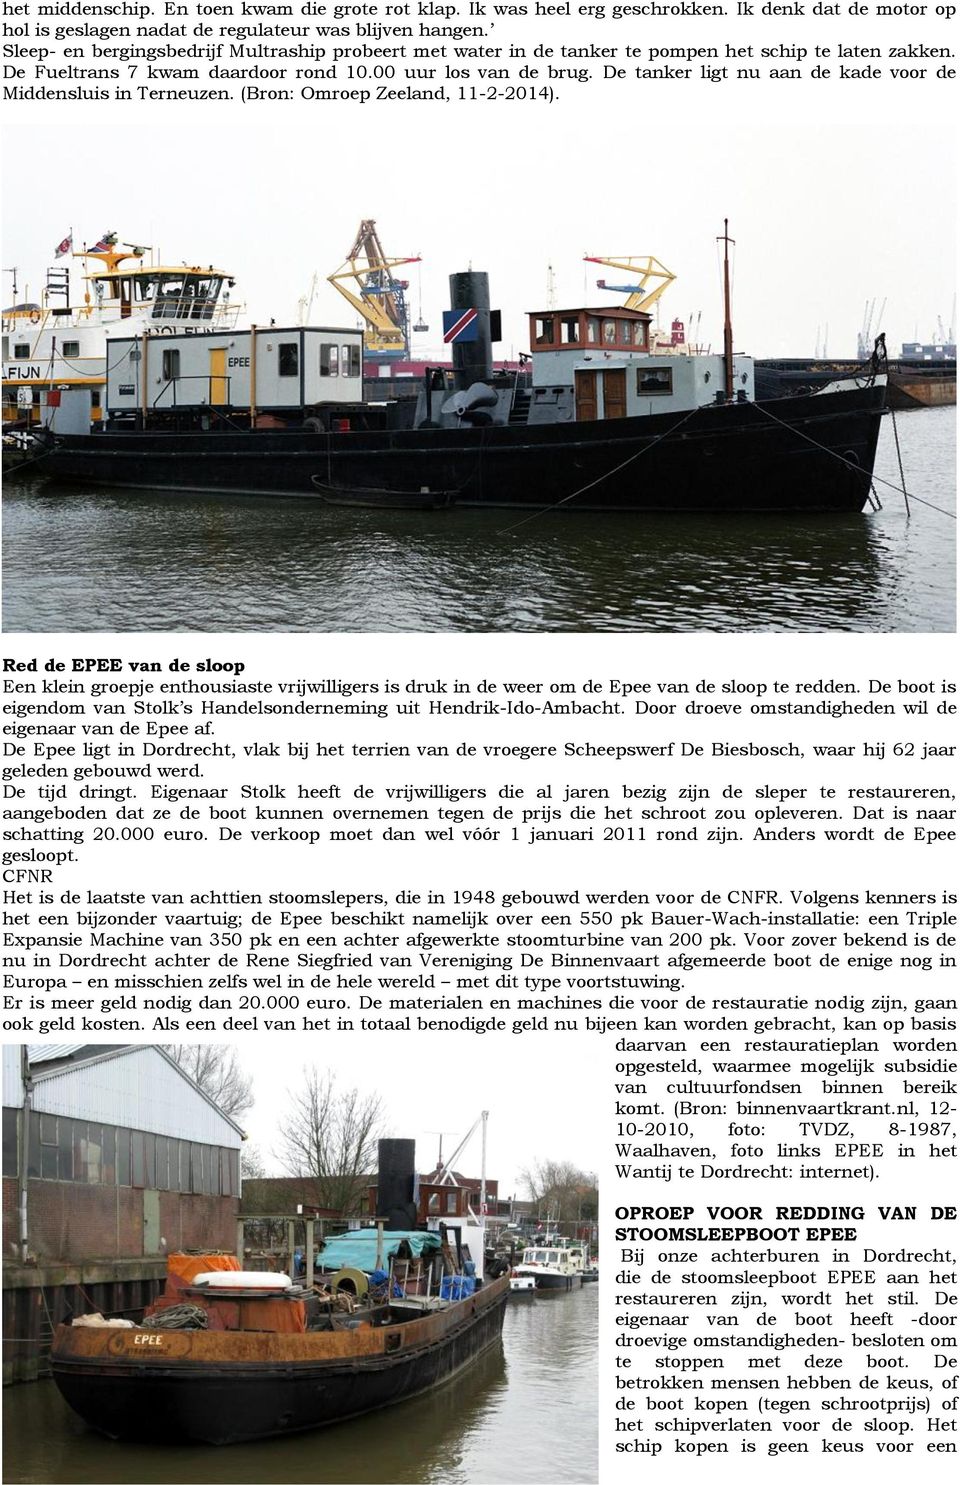 De tanker ligt nu aan de kade voor de Middensluis in Terneuzen. (Bron: Omroep Zeeland, 11-2-2014).